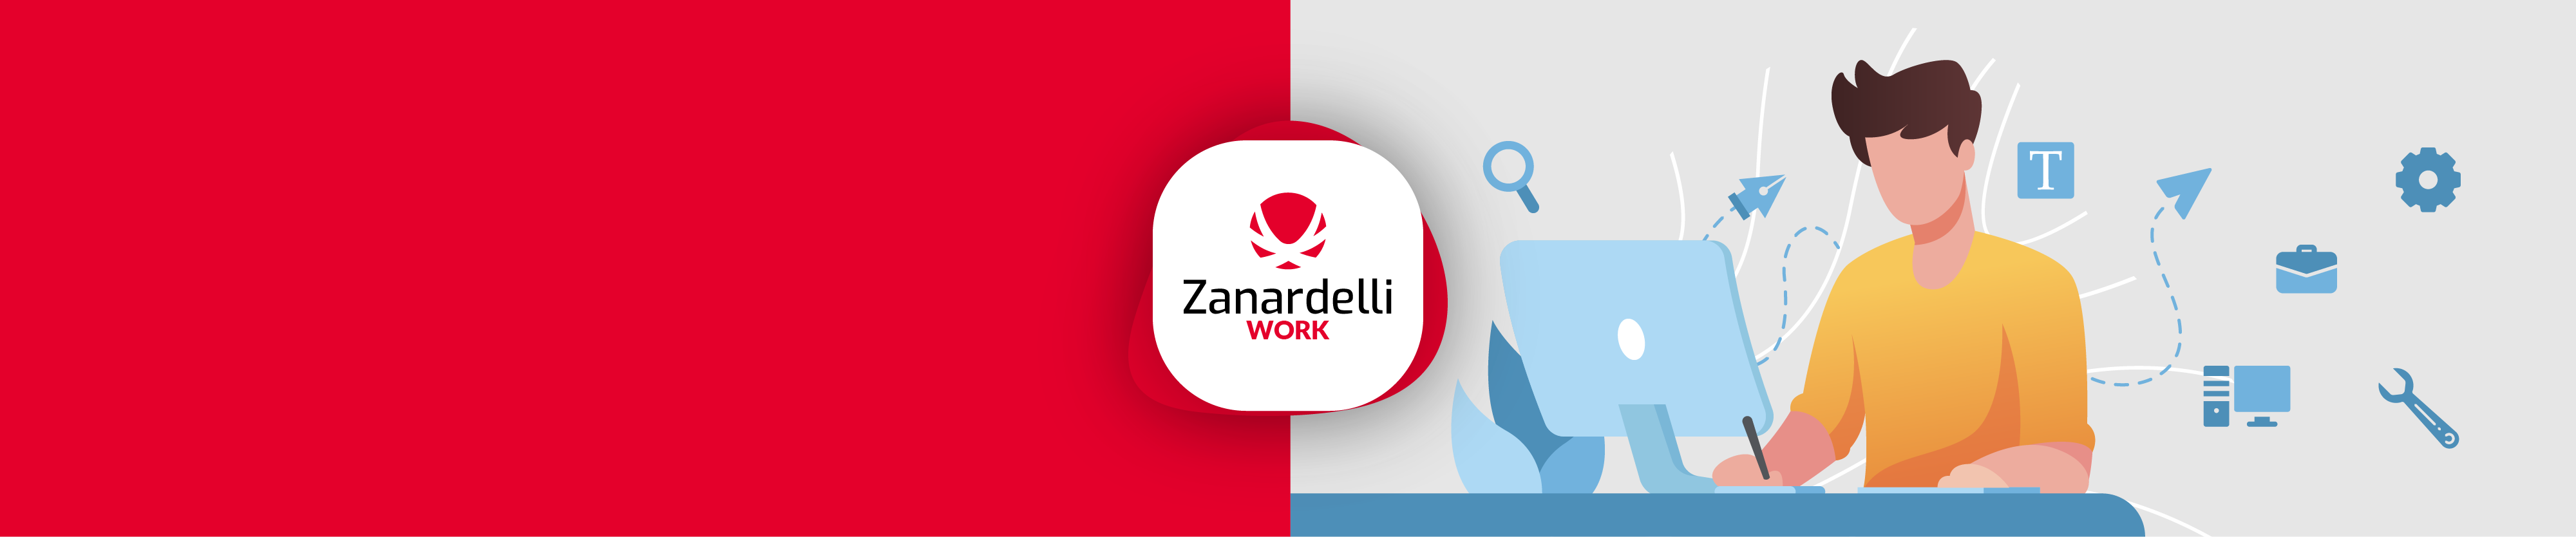 Zanardelli Work - Annunci di Lavoro - Slider